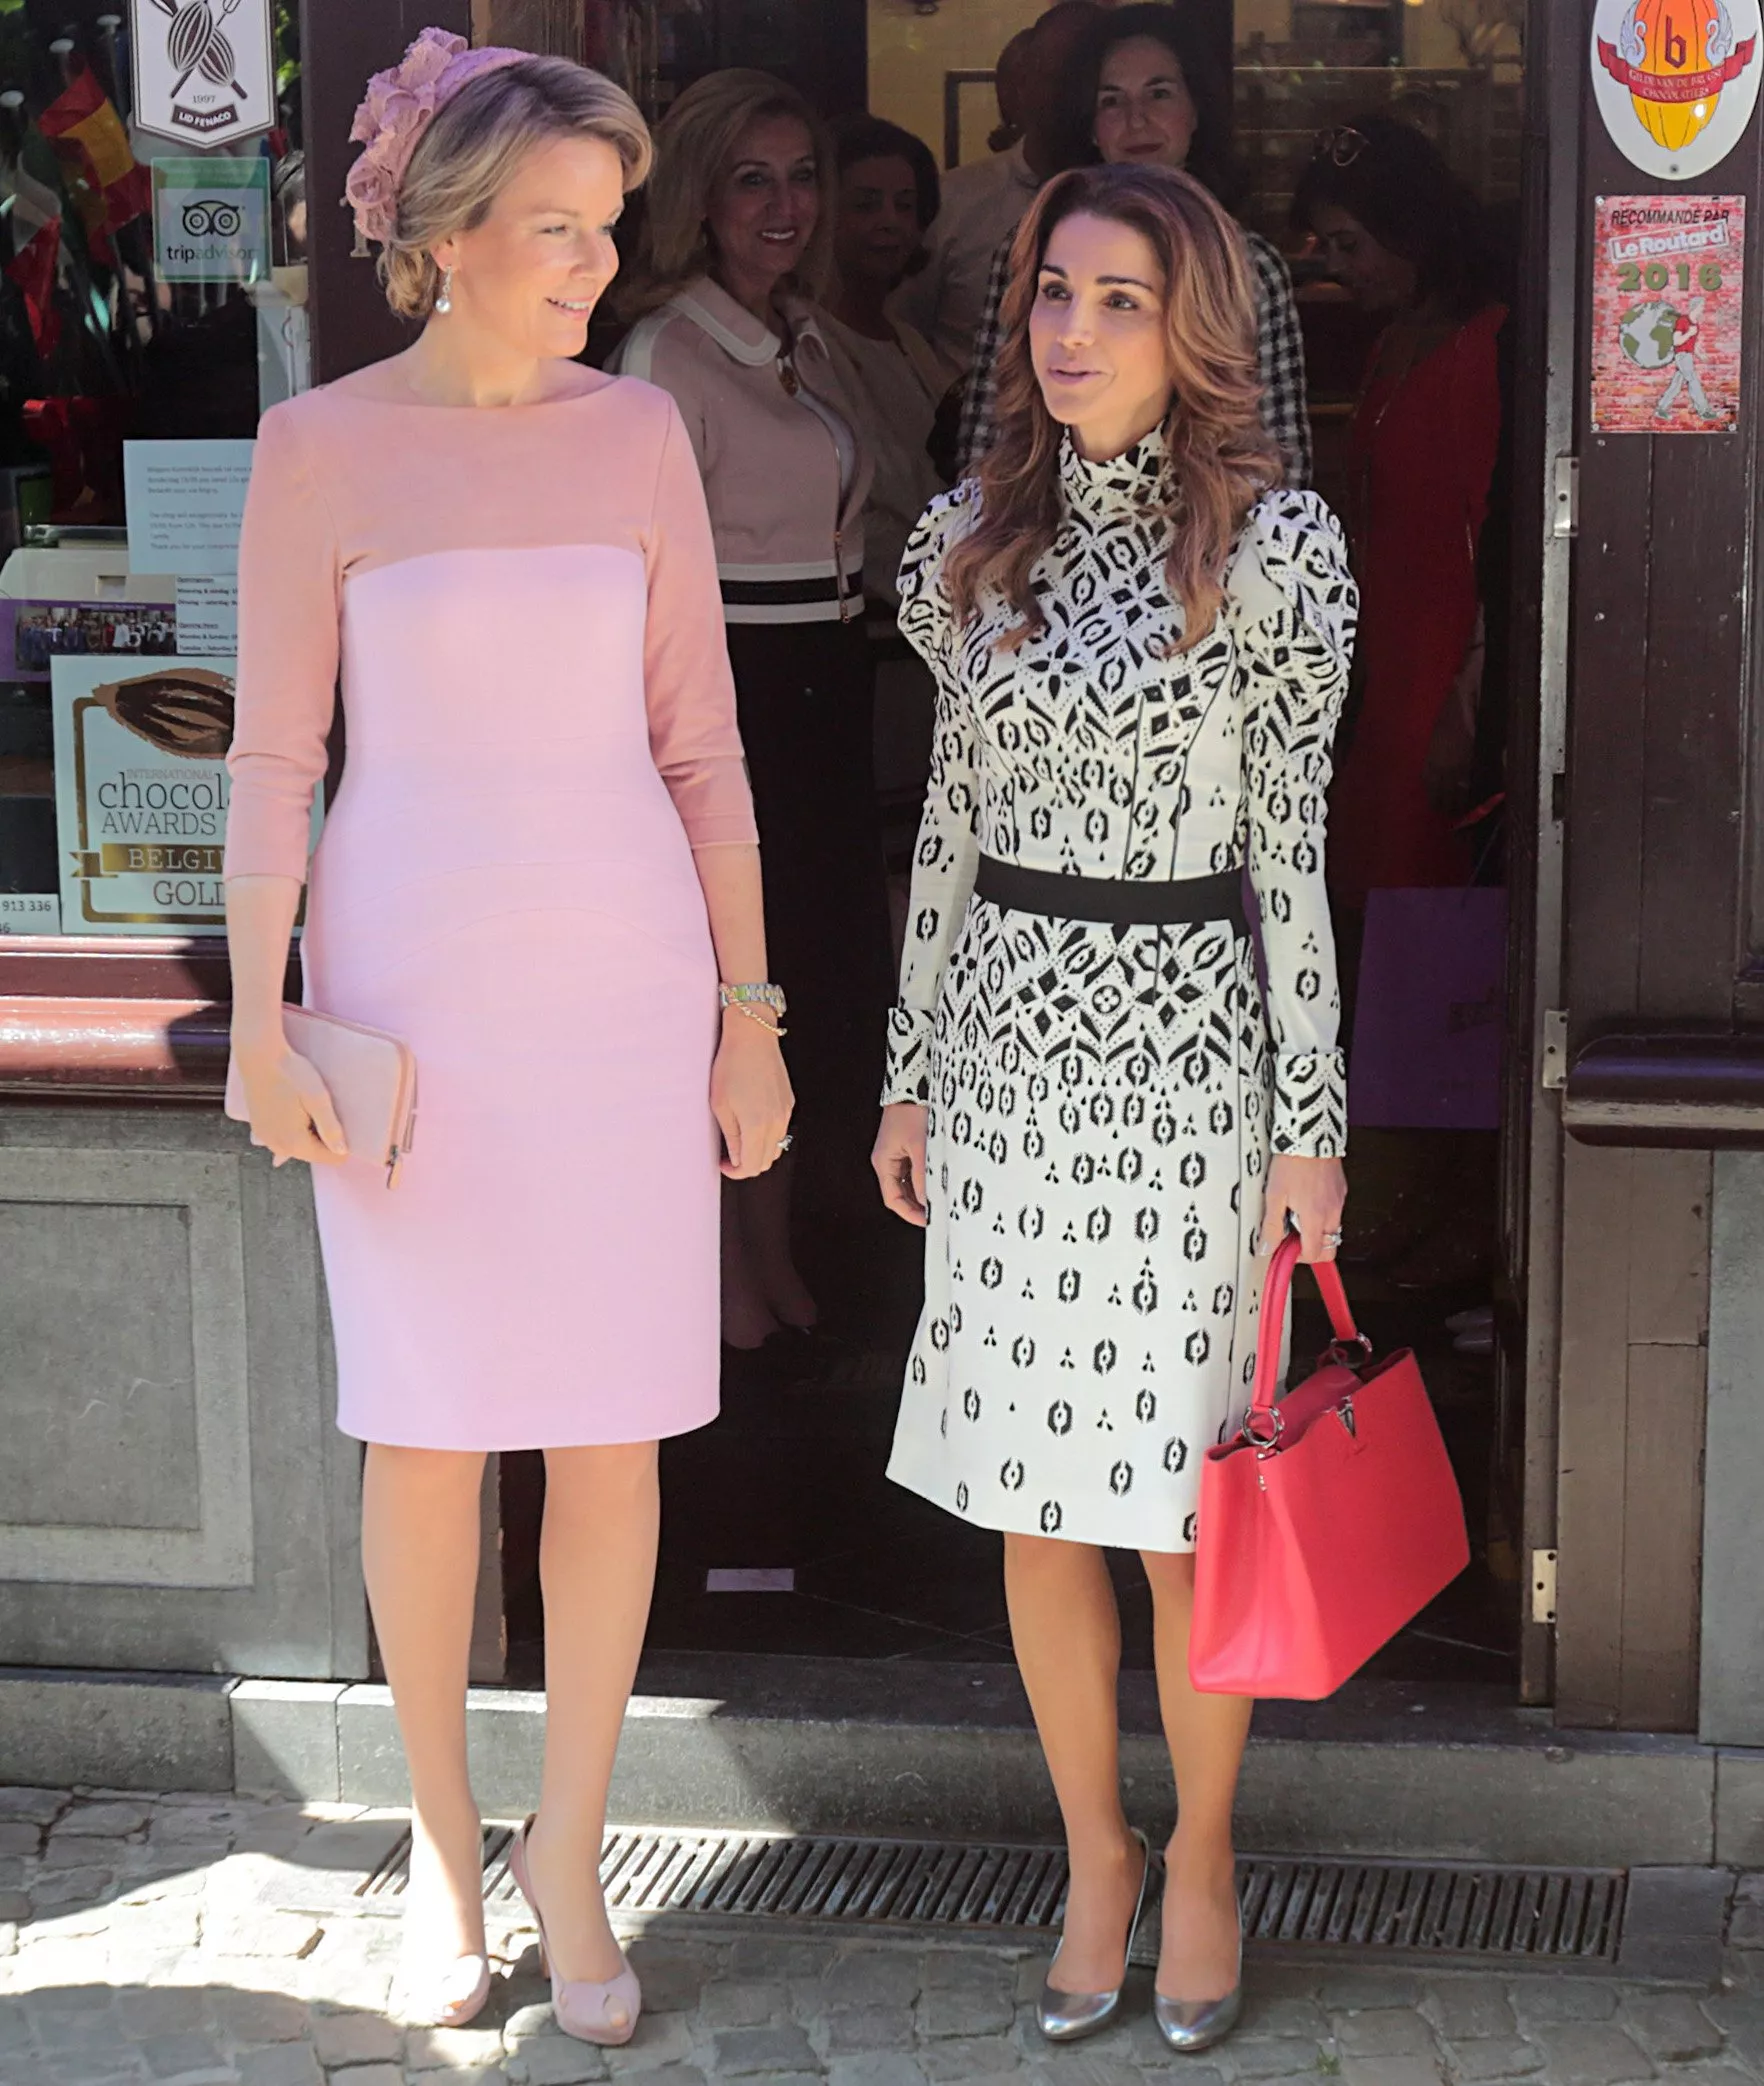 إطلالات الملكة رانيا تفيض أنوثة ورقيّاً في بلجيكا